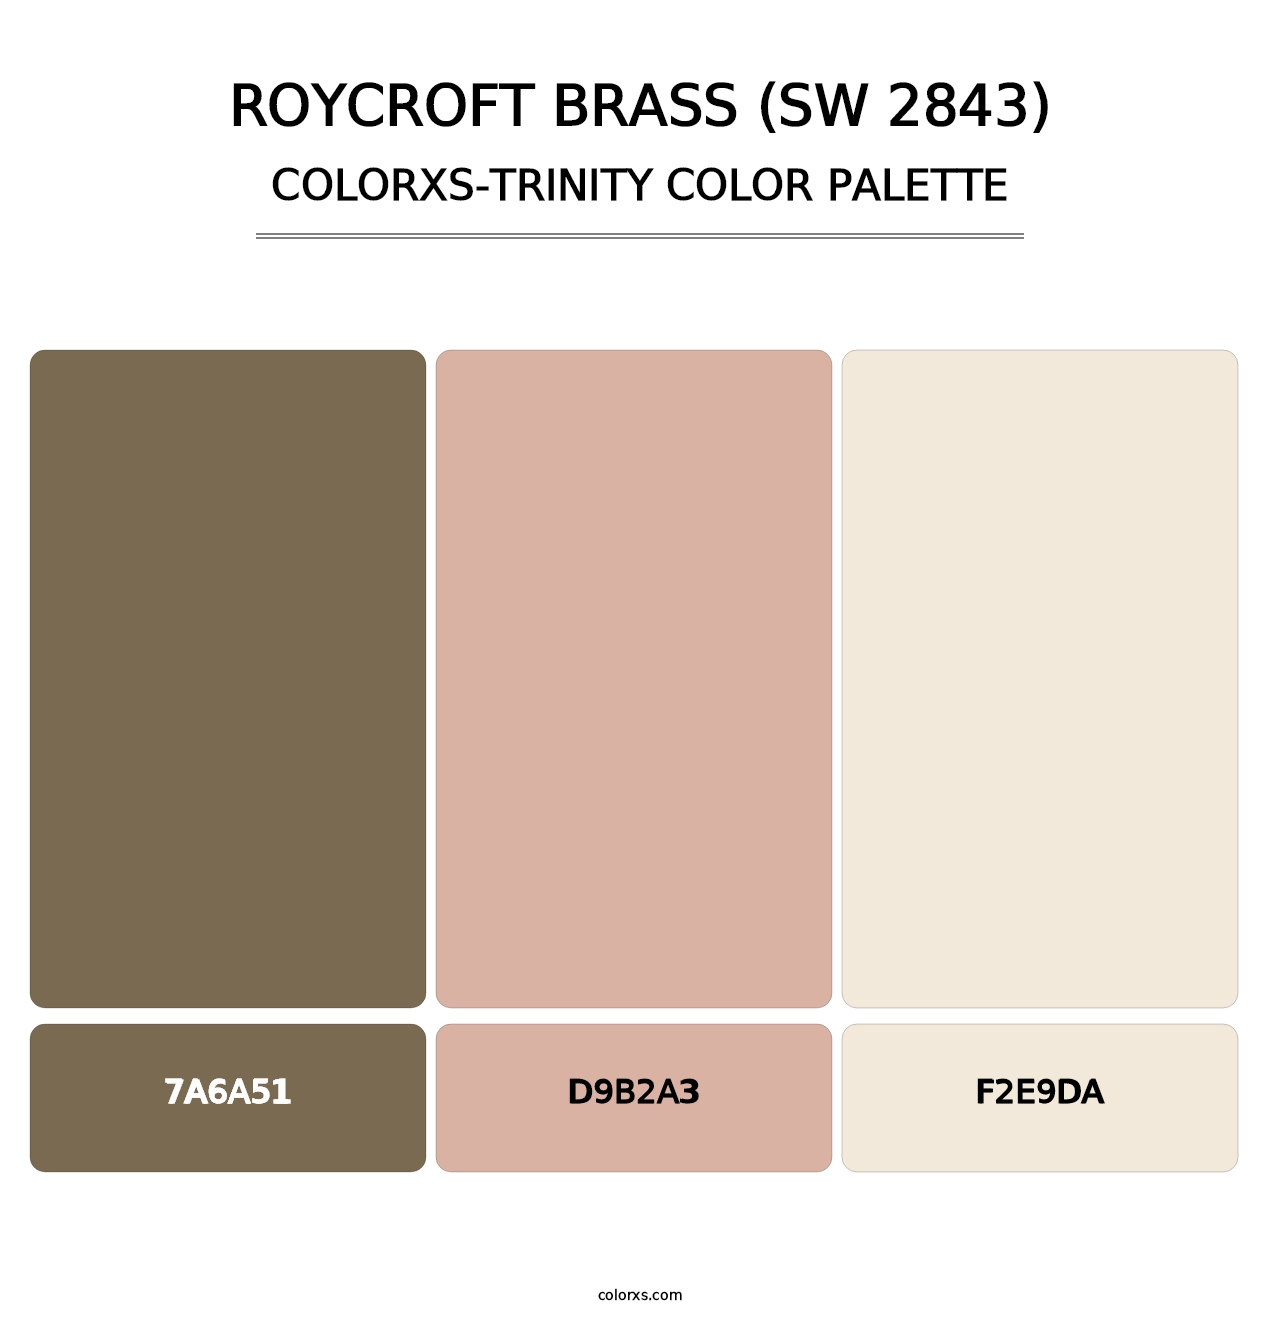 Roycroft Brass (SW 2843) - Colorxs Trinity Palette